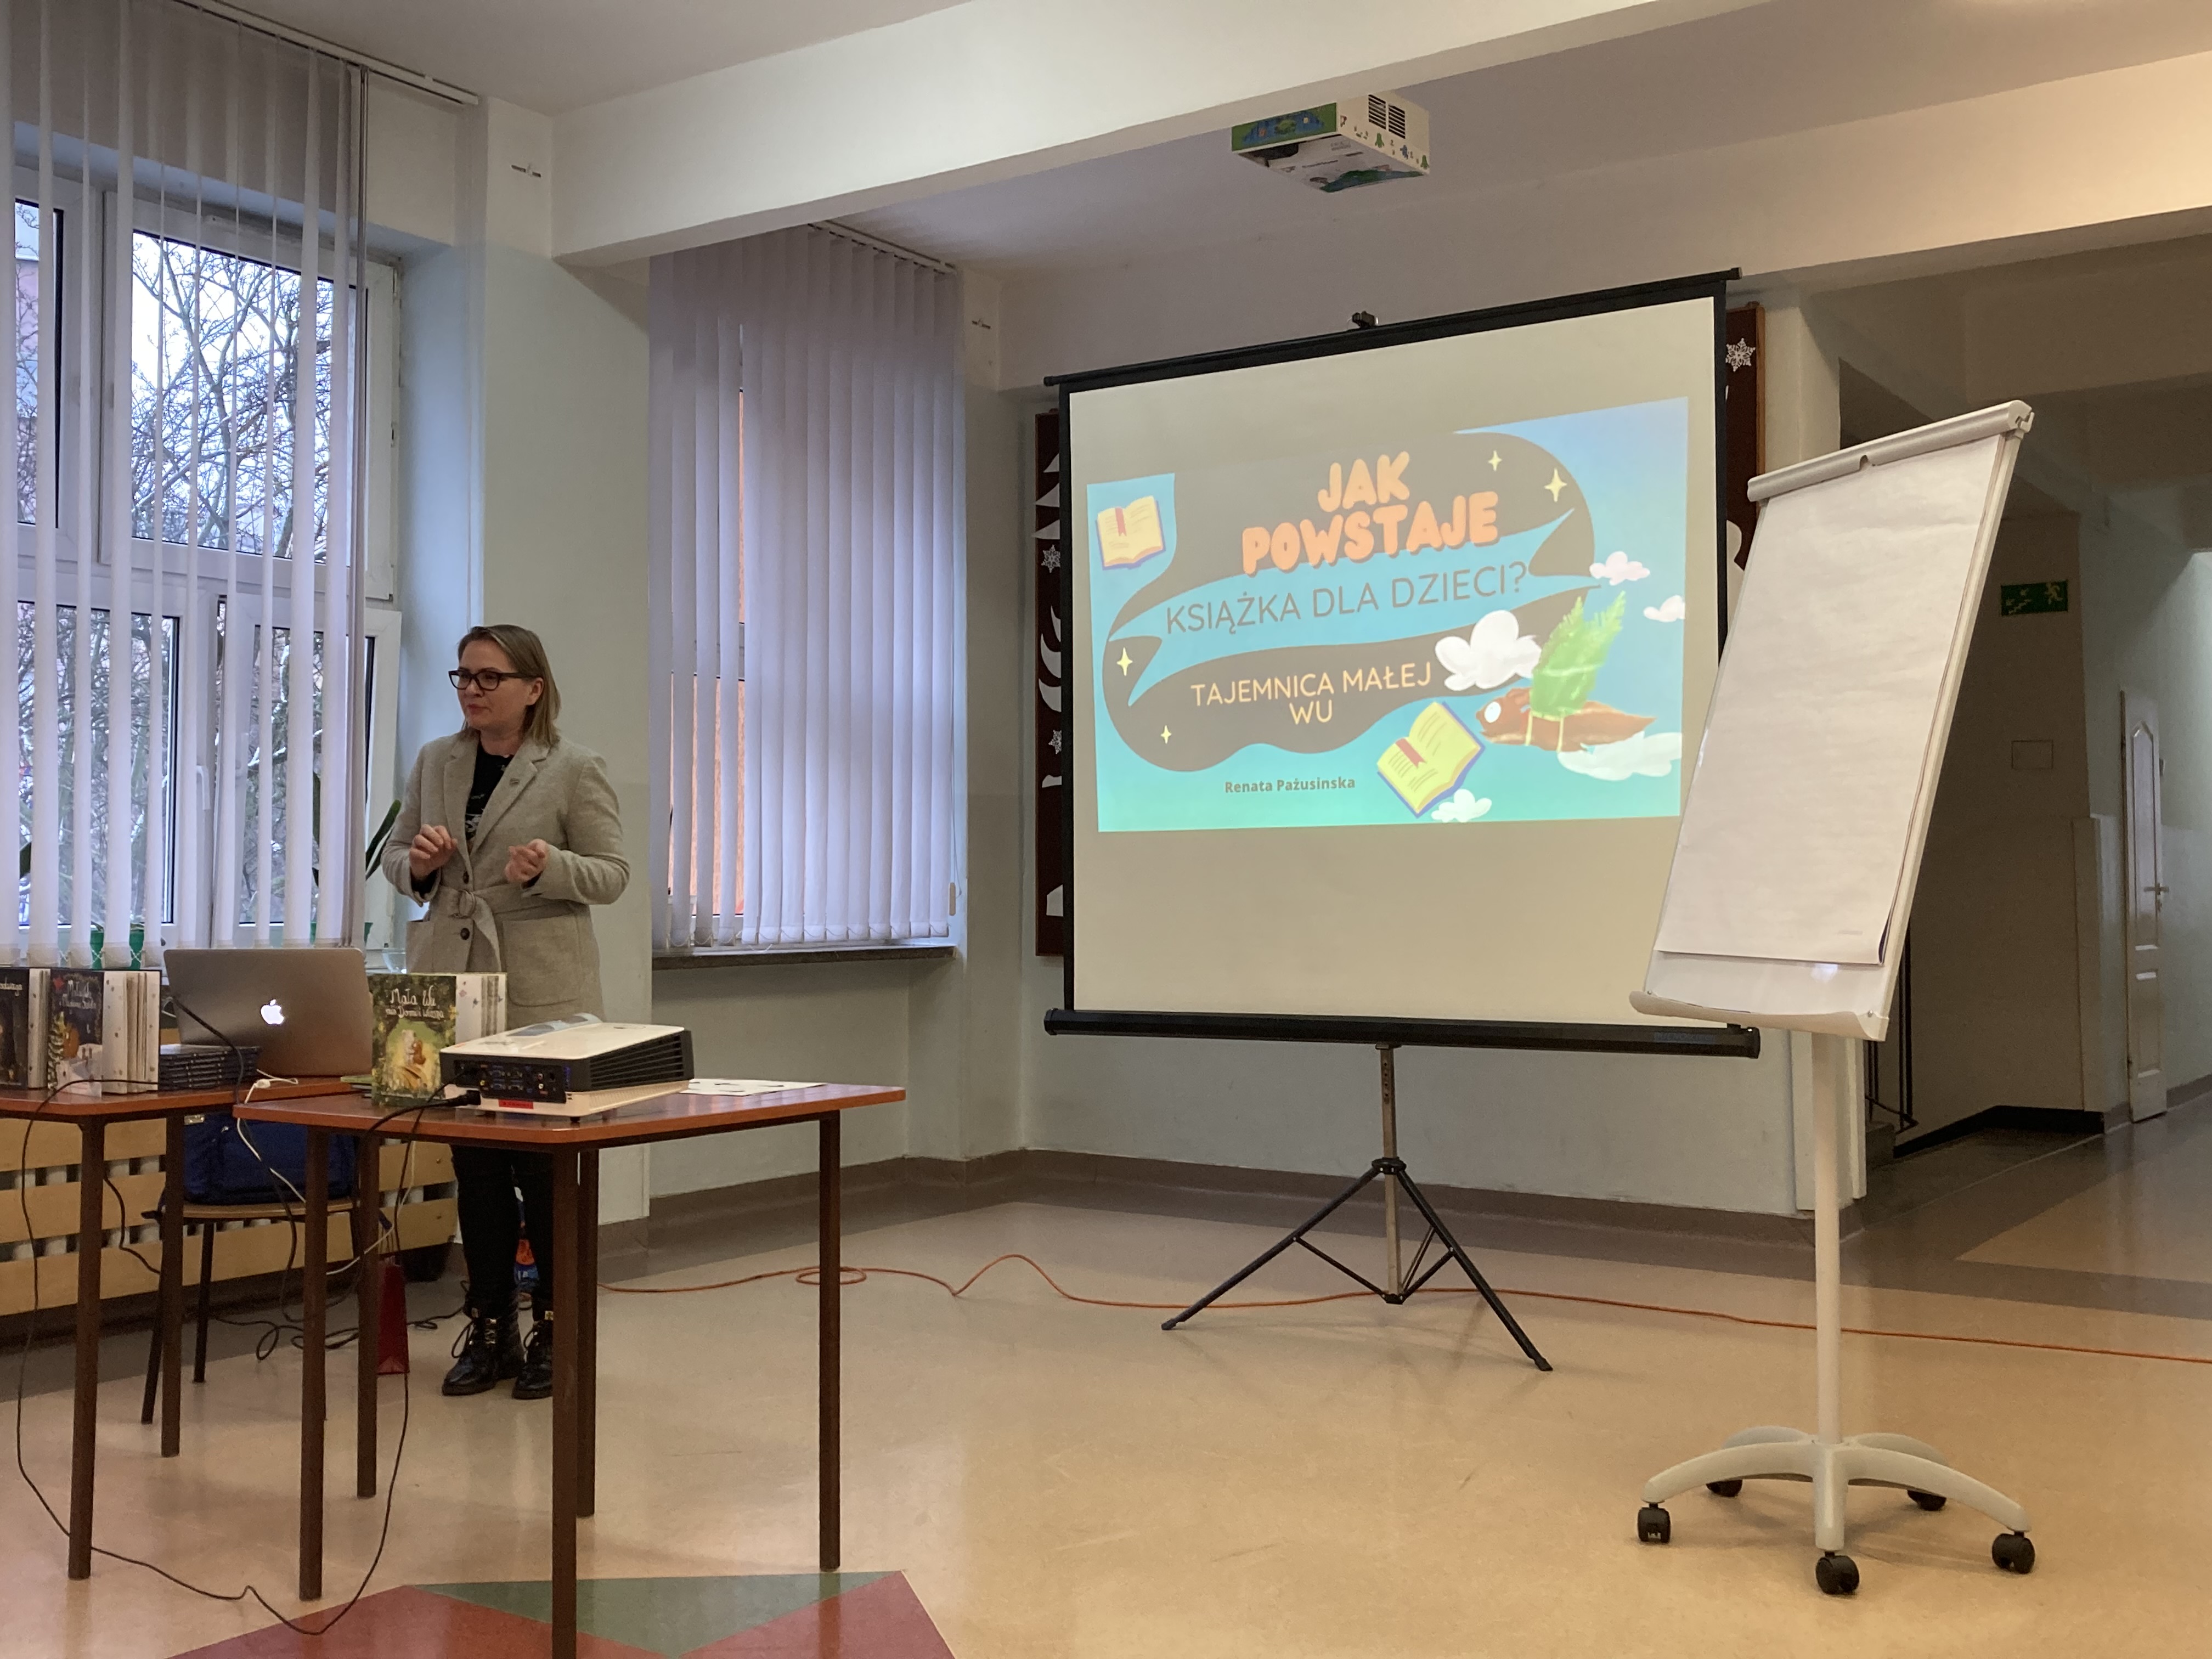 Pisarka, Pani Renata Pażusinska" przedstawia dzieciom prezentację pod tytułem "Jak powstaje książka dla dzieci".